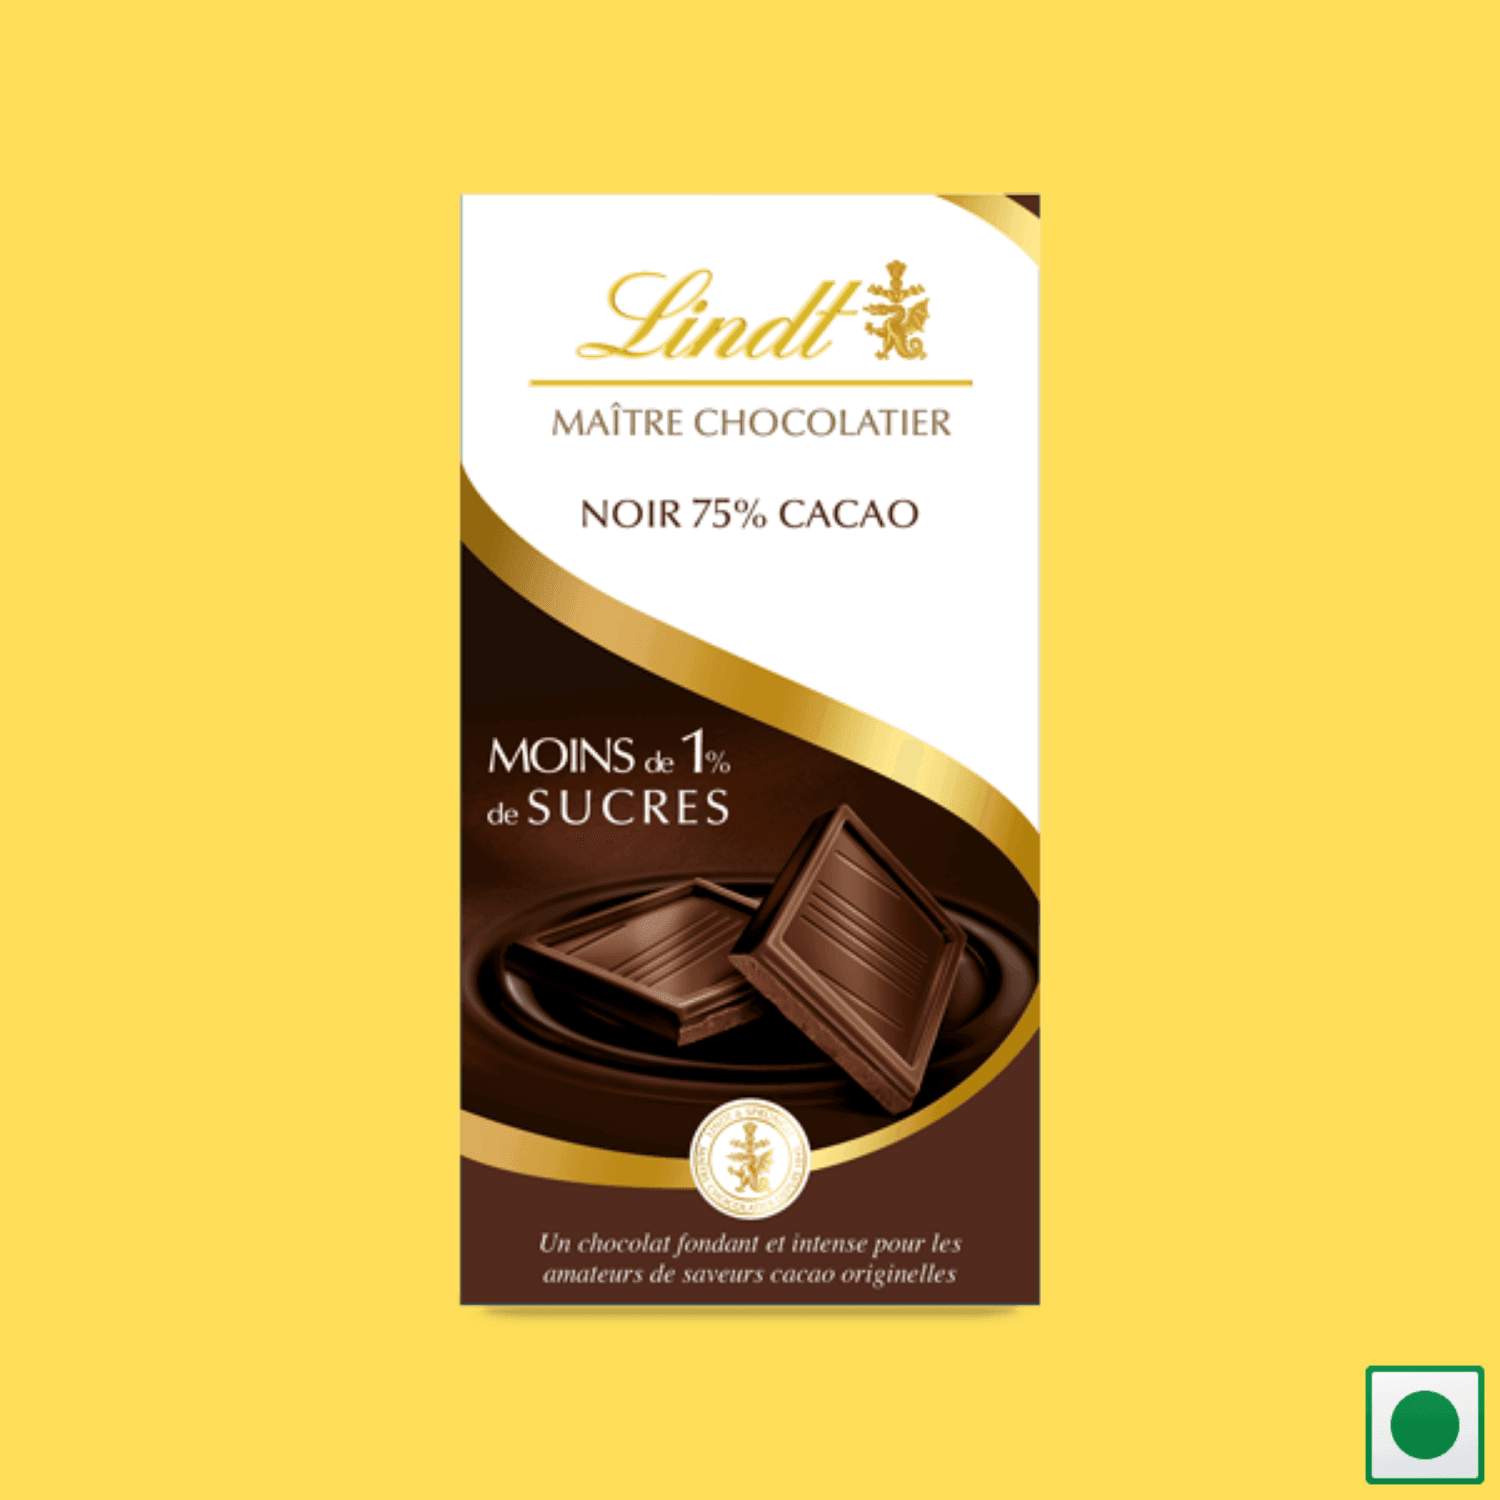 Lindt Noir 75% Cacao Moins de 1% de Sucres(Dark 75% Cacao Less than 1% Sugars), 100g (Imported) - Super 7 Mart